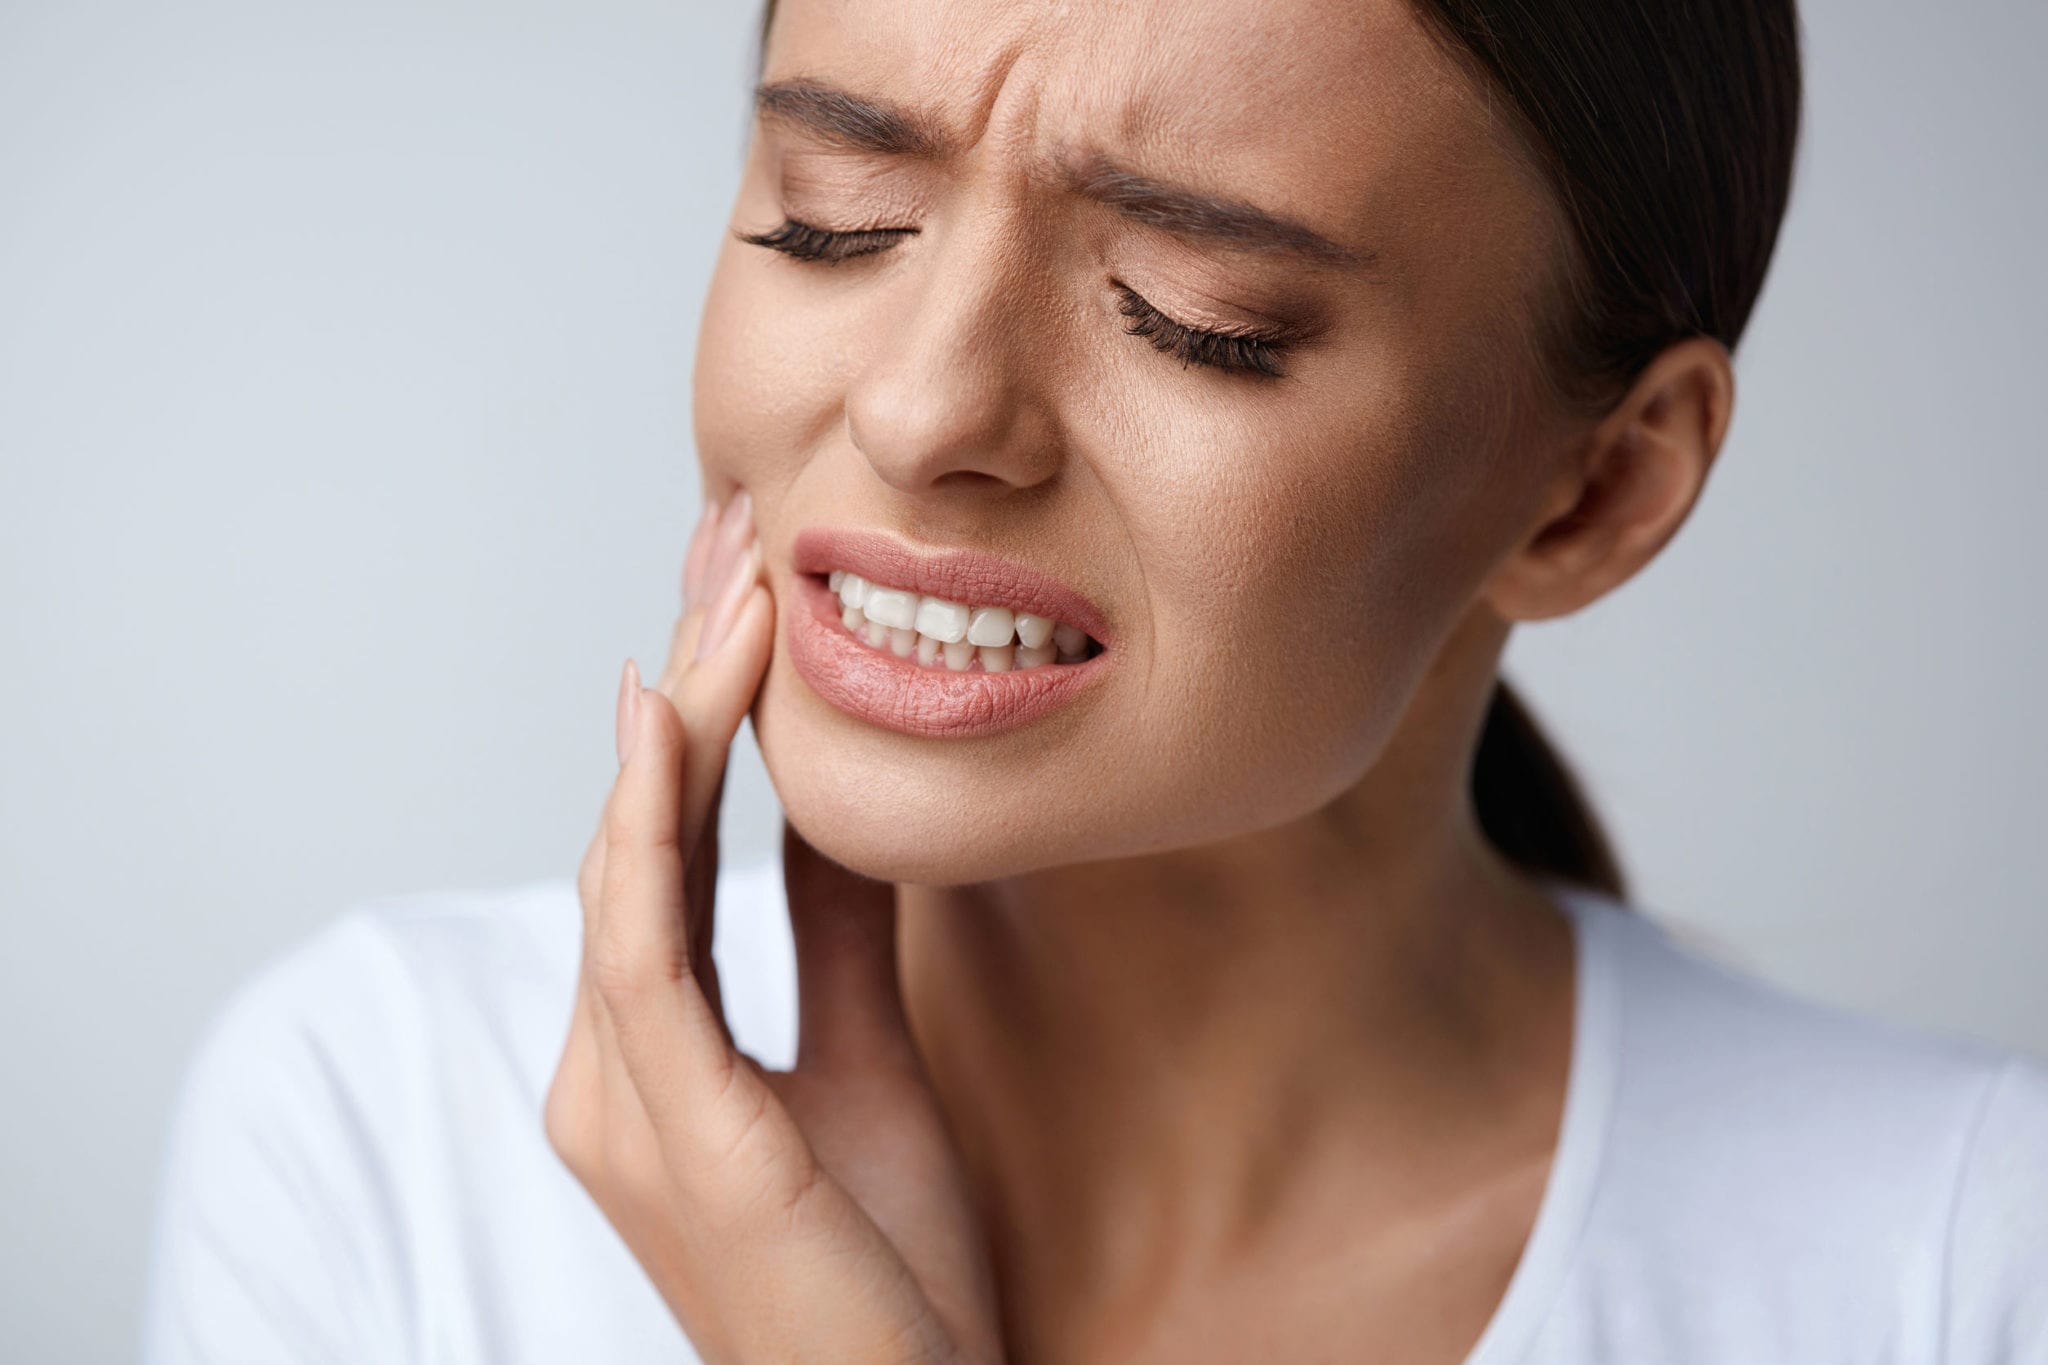 Risk Factors for Dental TSS